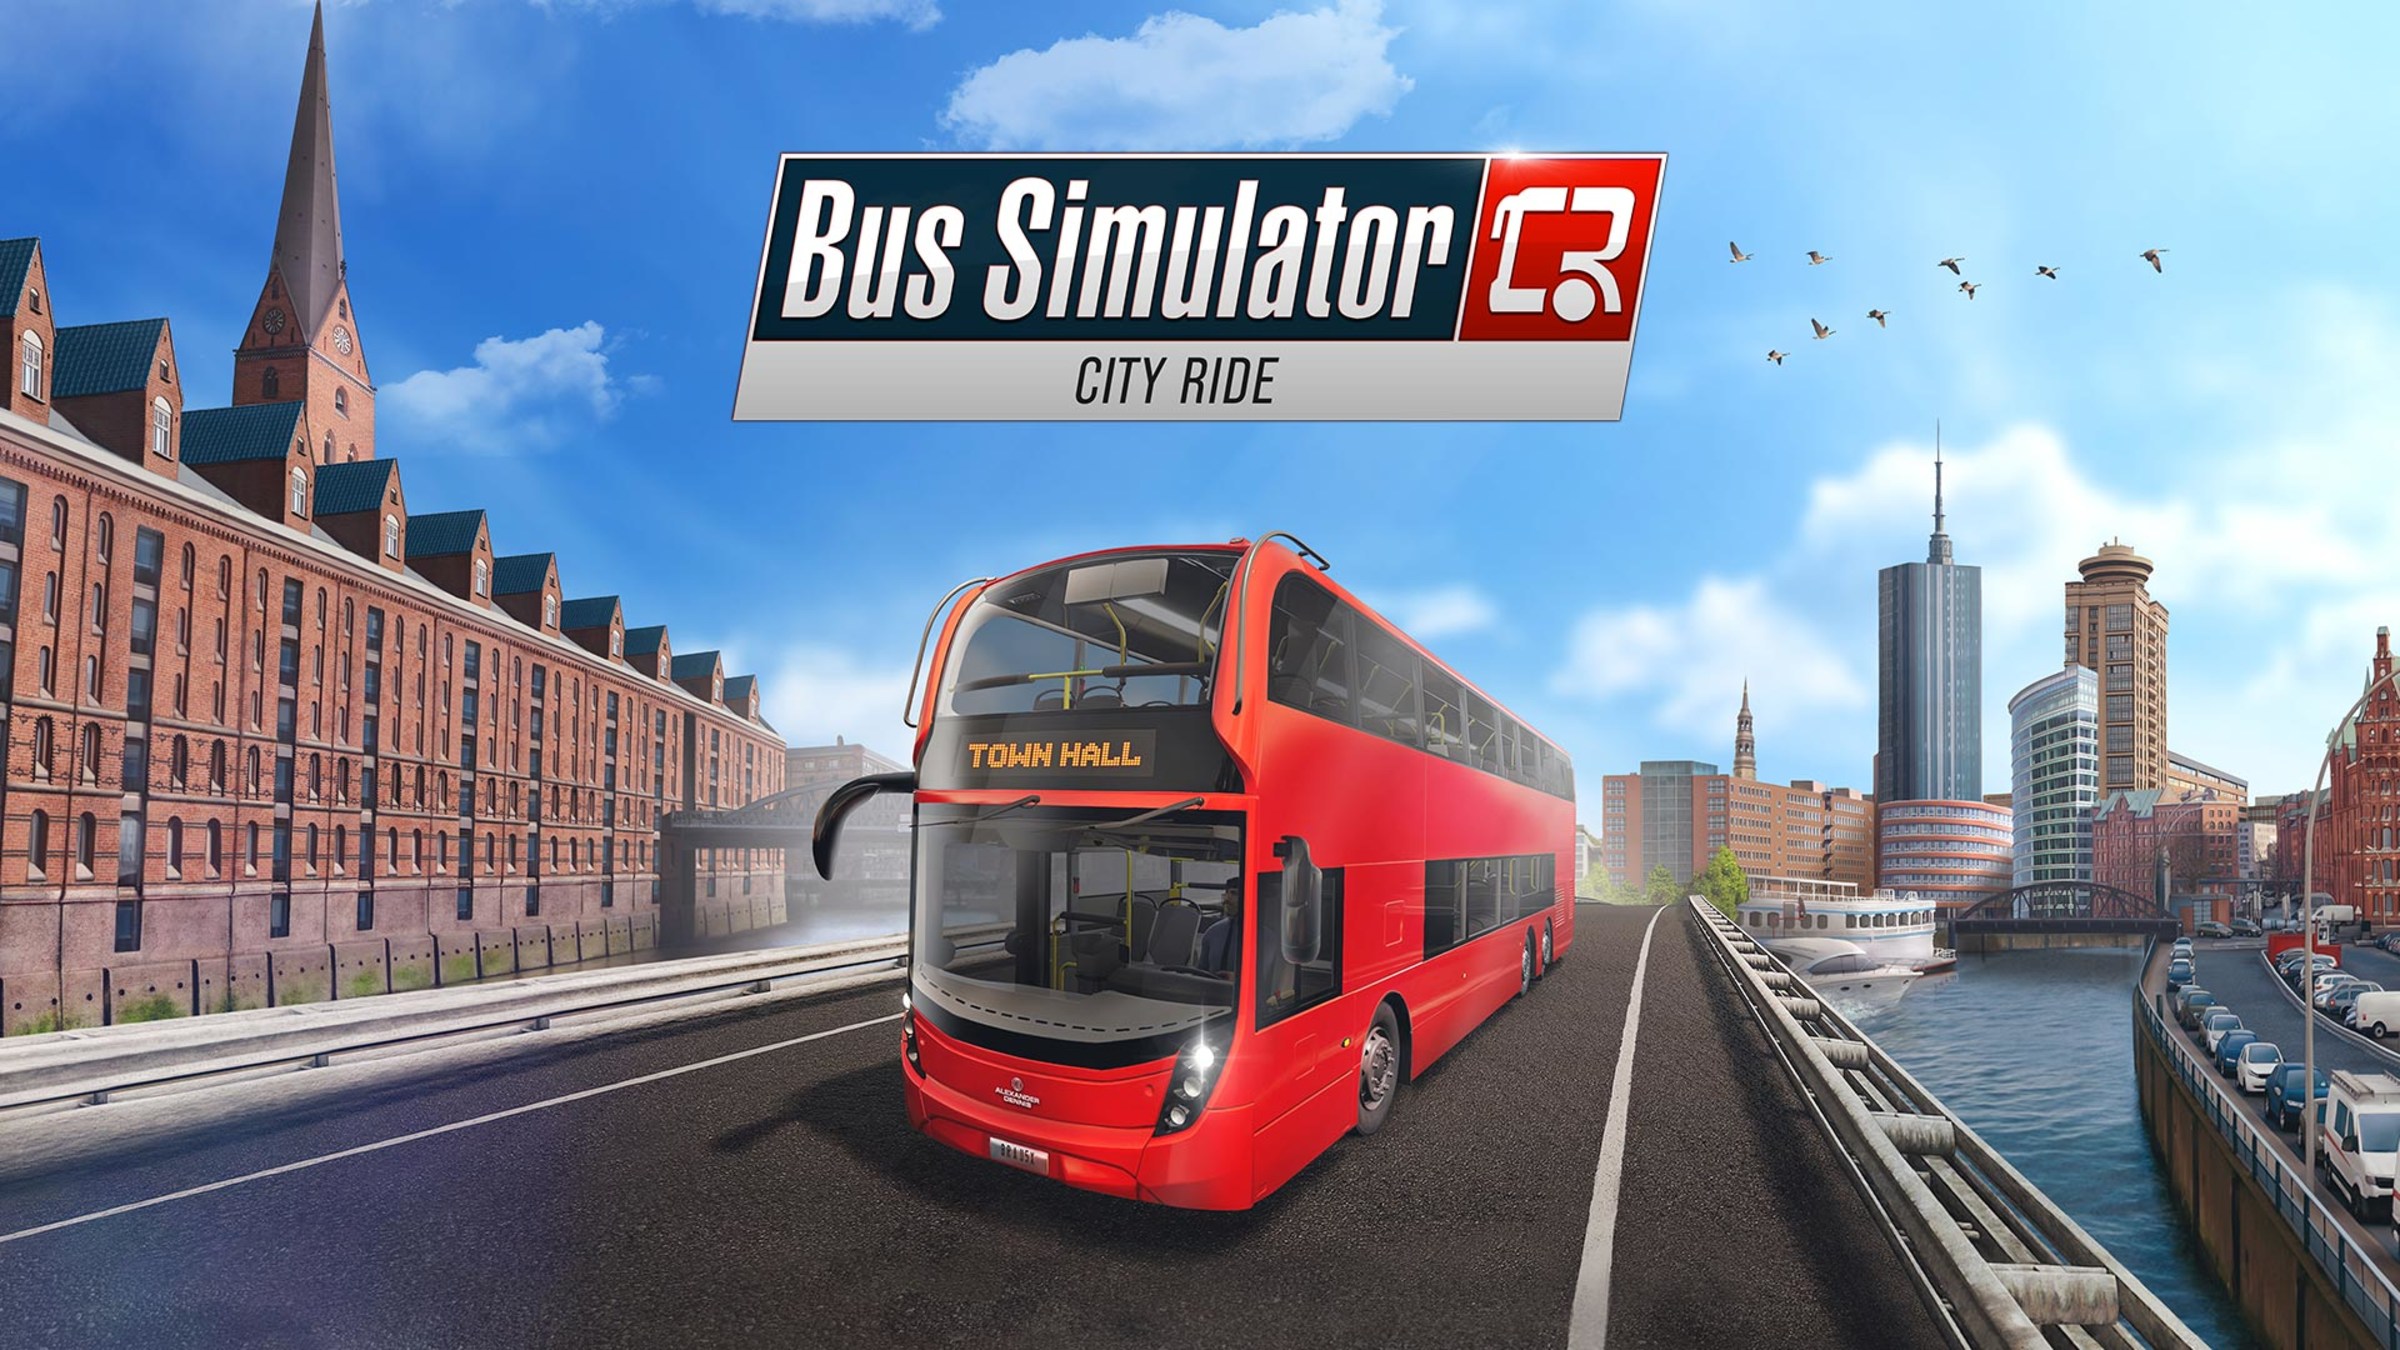 Bus Simulator City Ride for Nintendo Switch Nintendo Official Site